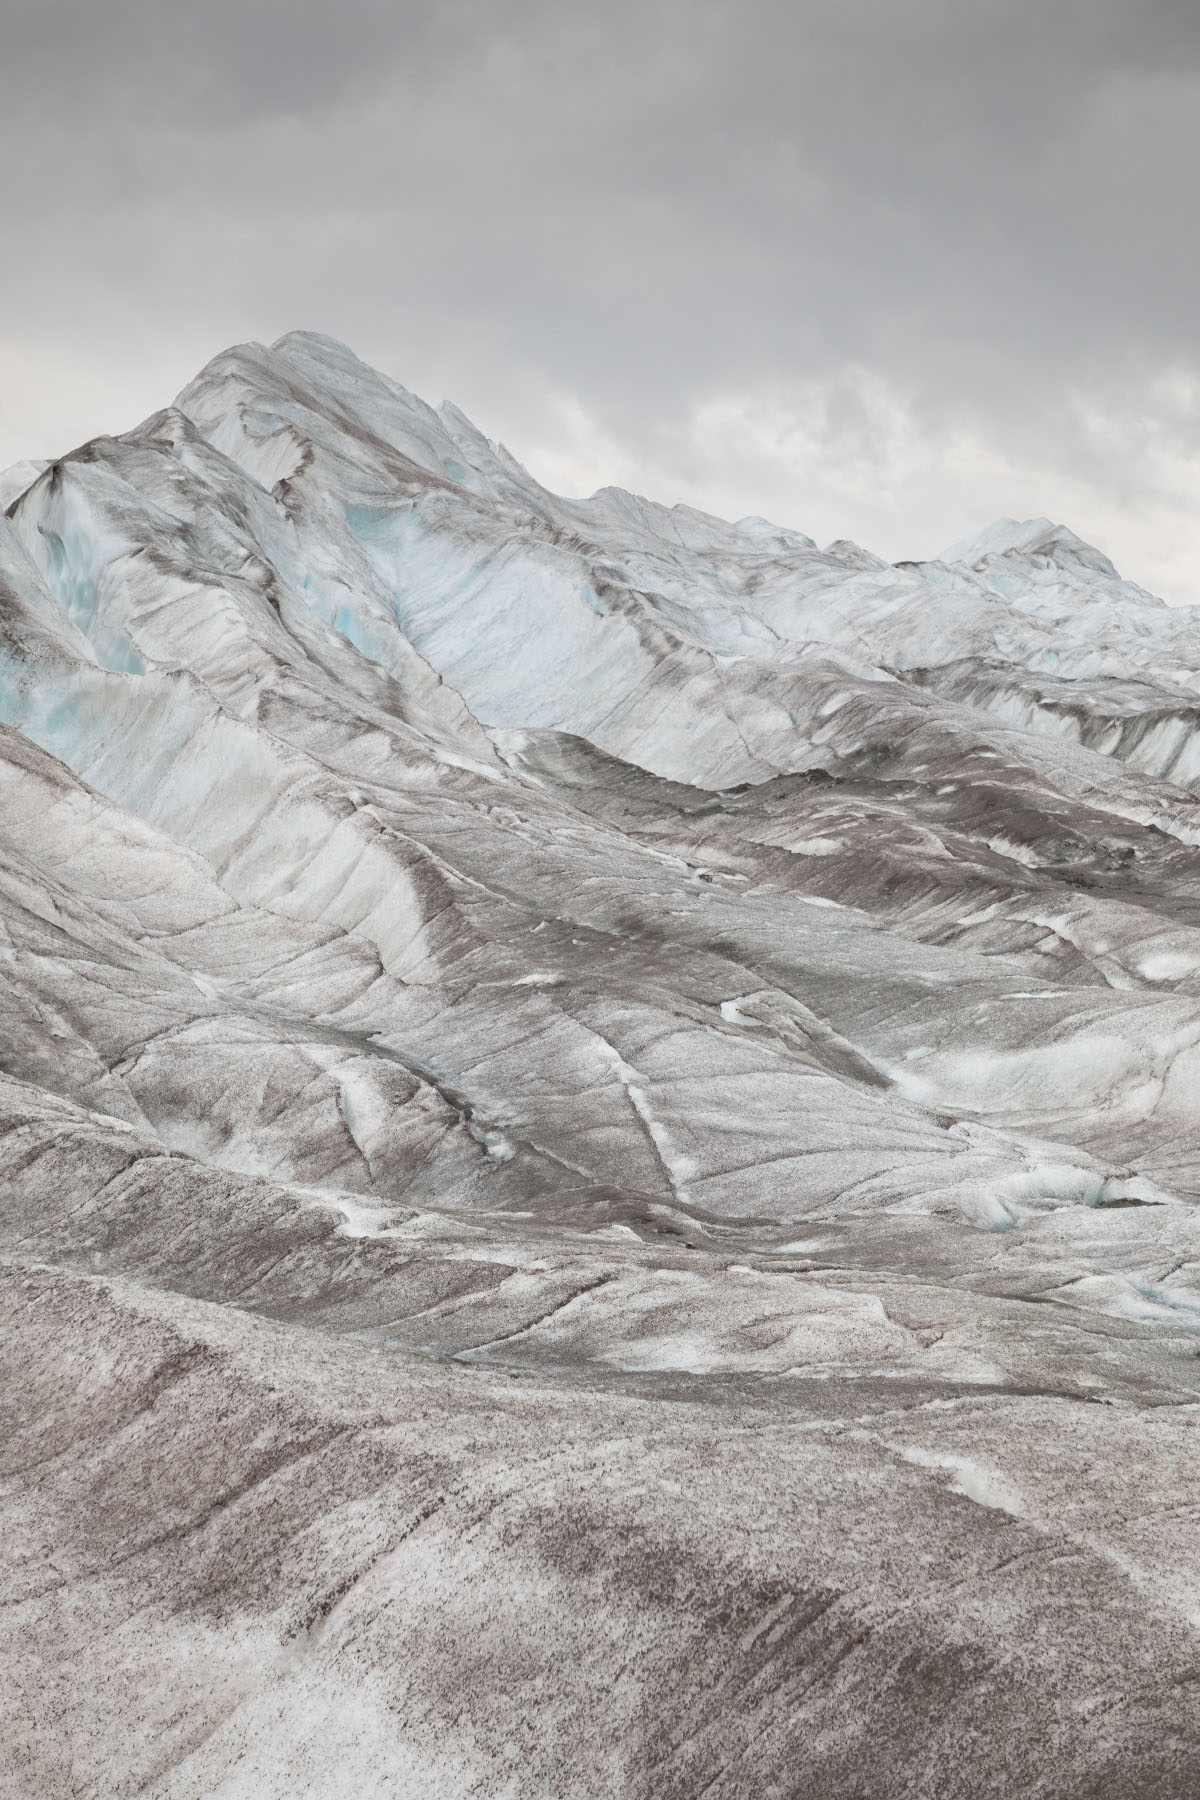 20 septembre 2020, glacier d'Aletsch dans le secteur de Märjelen. Crevasses sous un ciel gris.